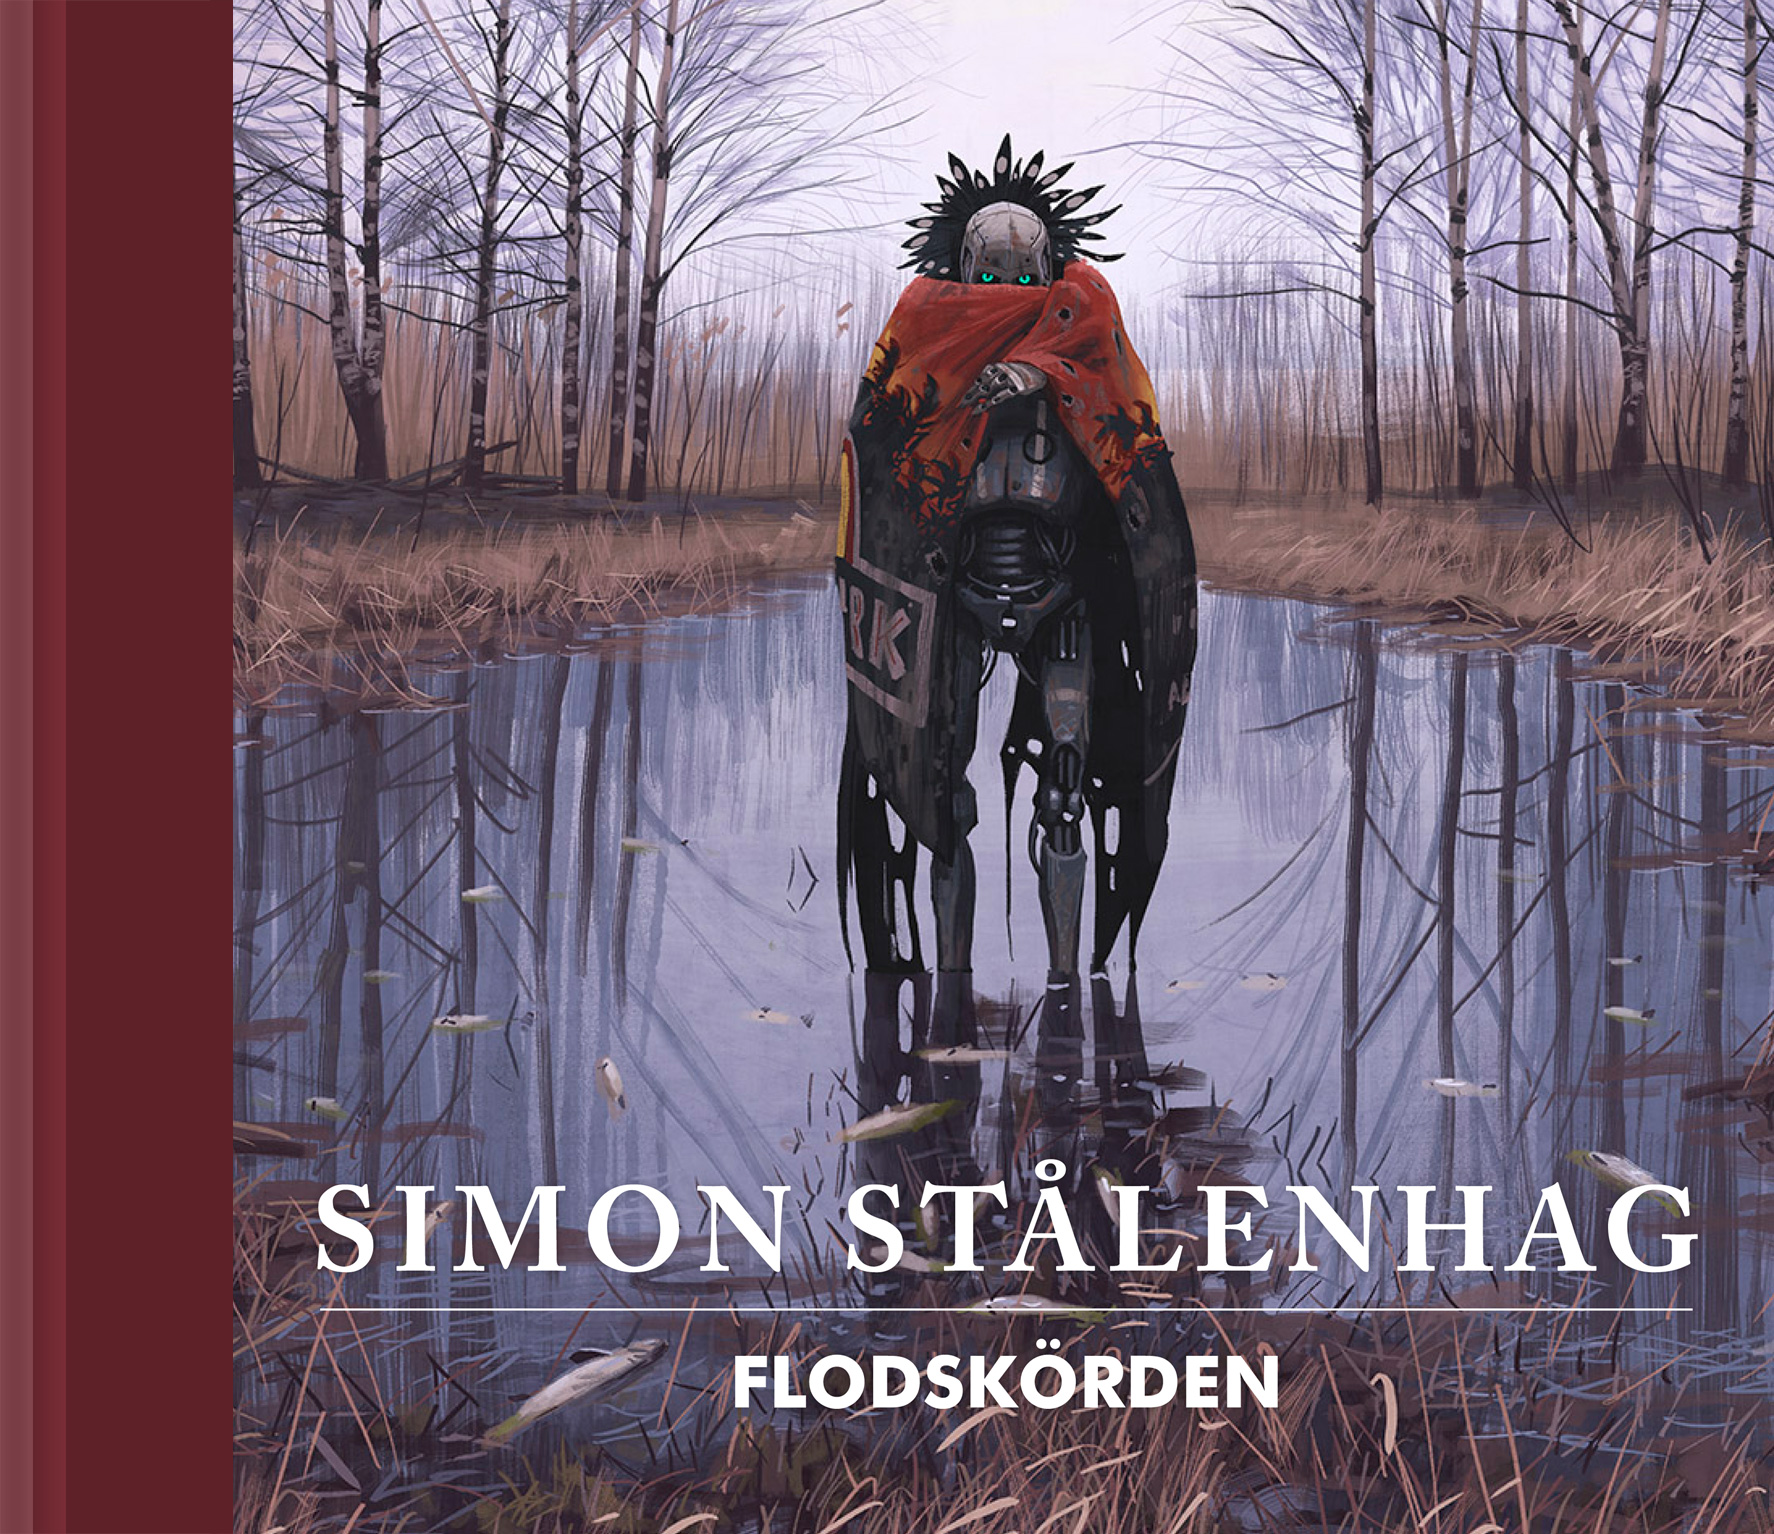 Simon Stålenhag - Flodskörden (svenska) - Klicka på bilden för att stänga